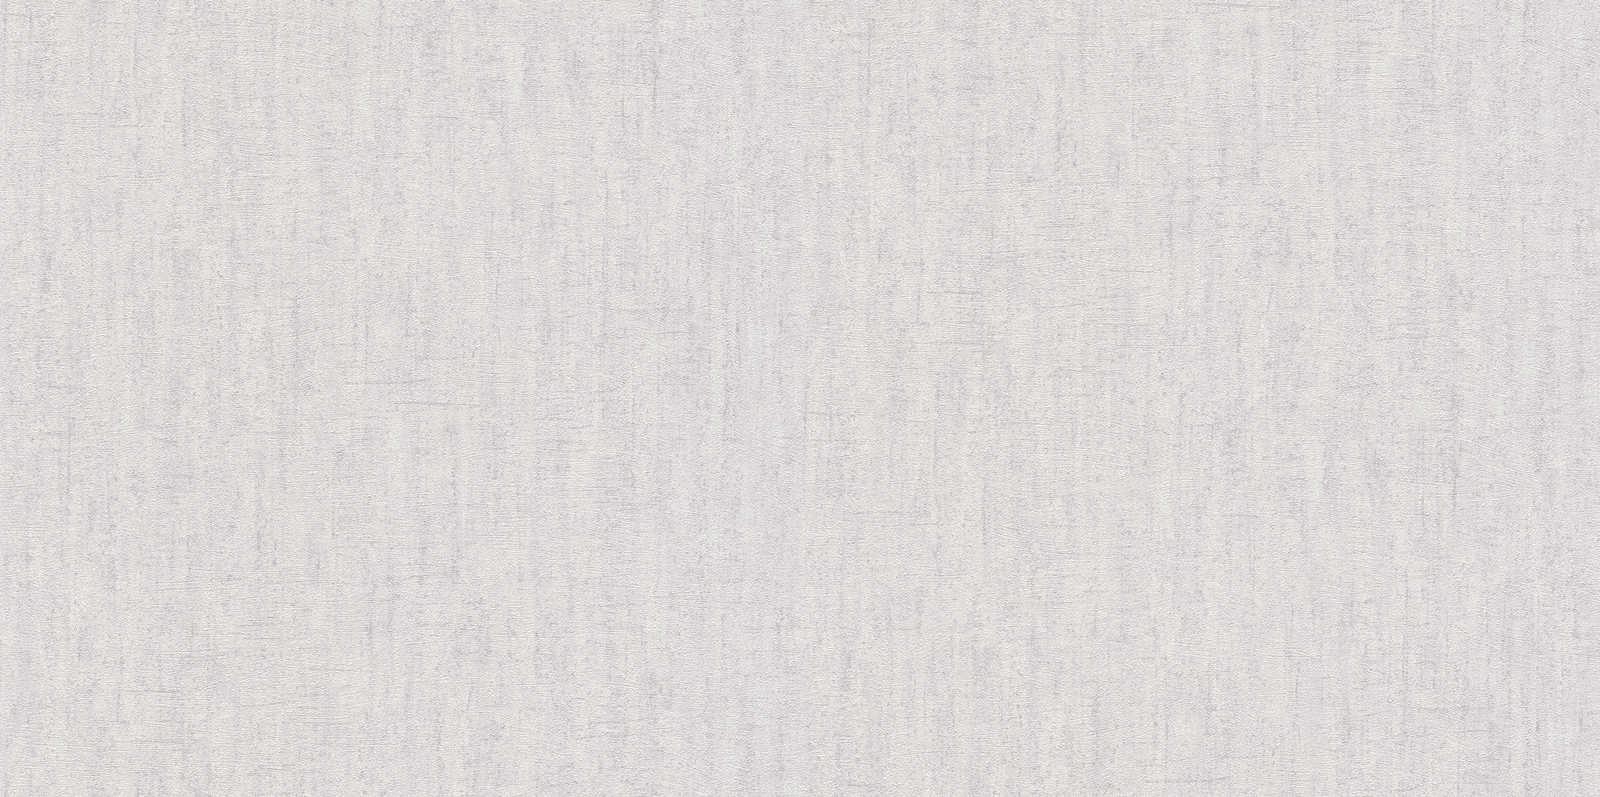             Papel pintado no tejido gris claro brillante con textura - Gris
        